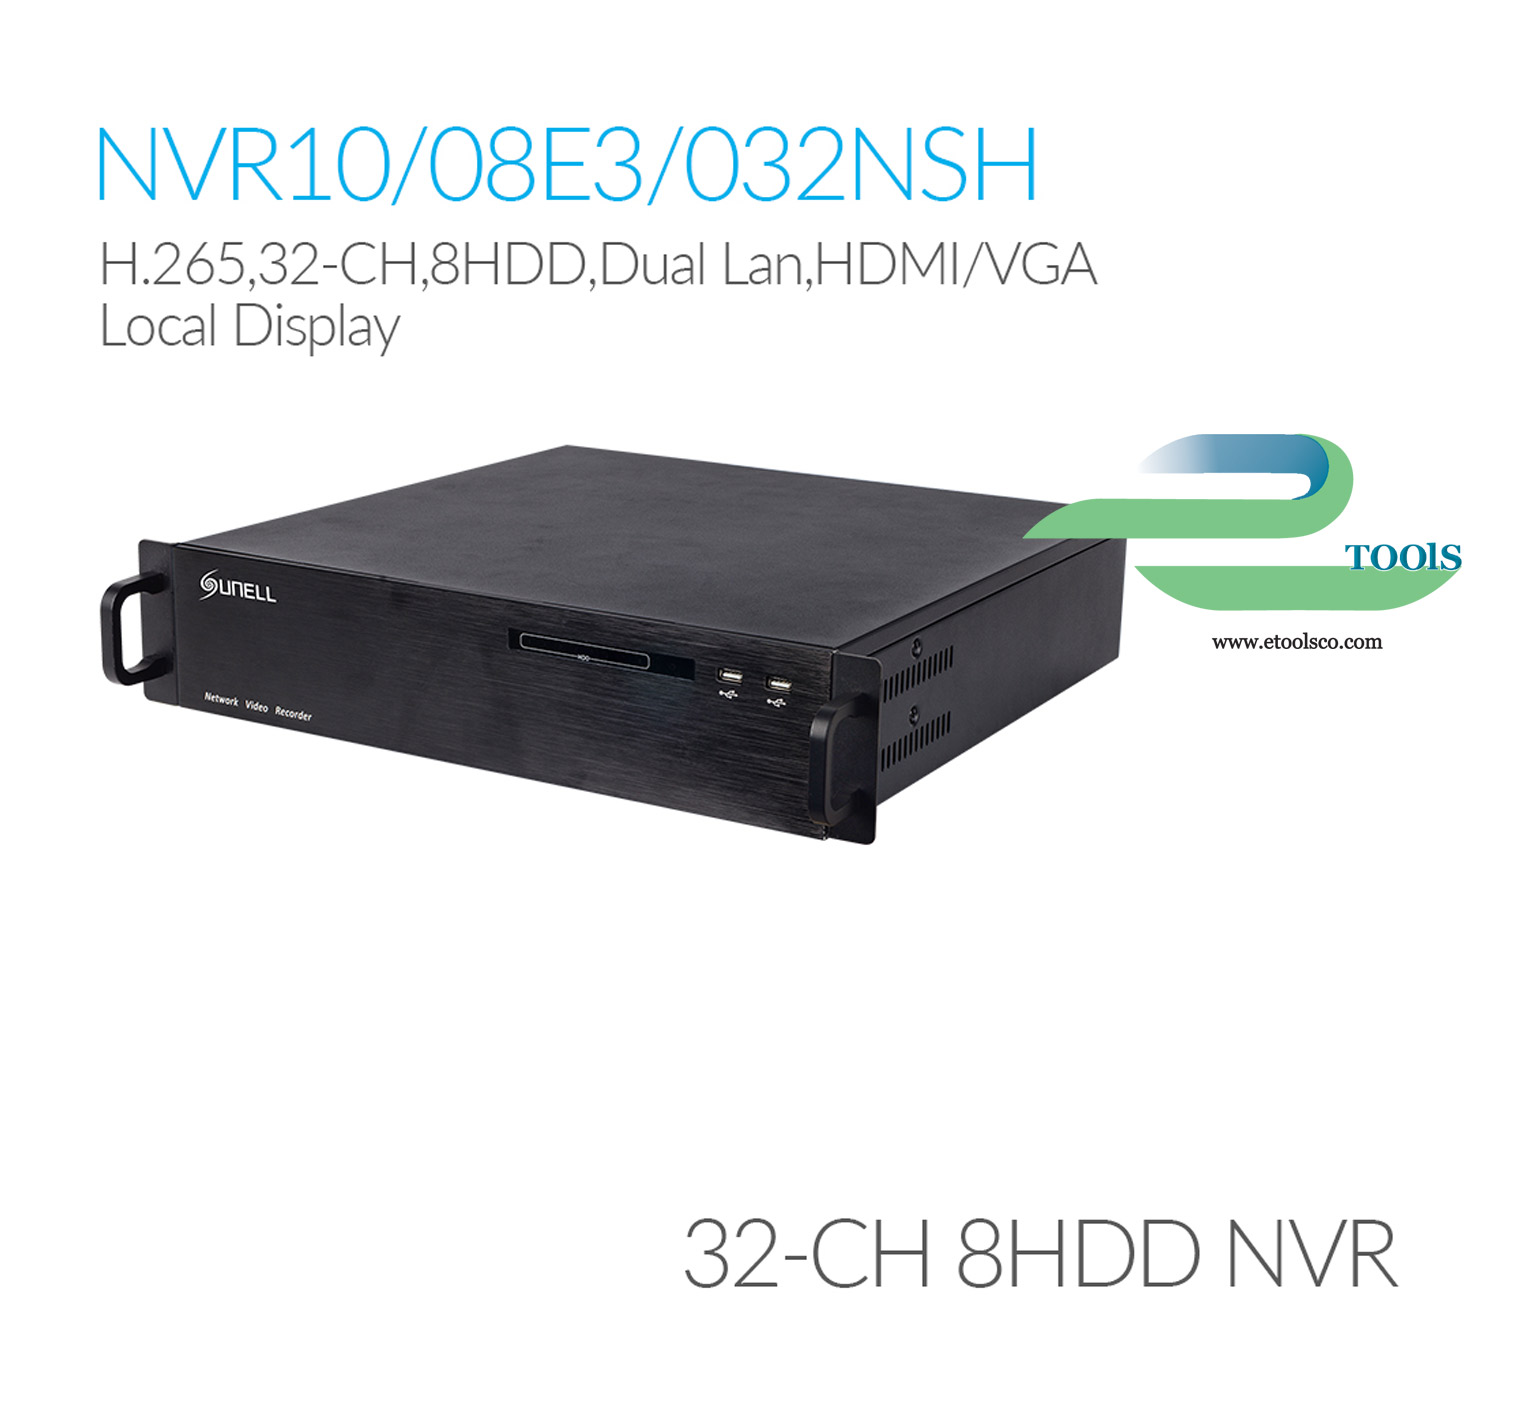 NVR سانل SN NVR10/08E3032NSH